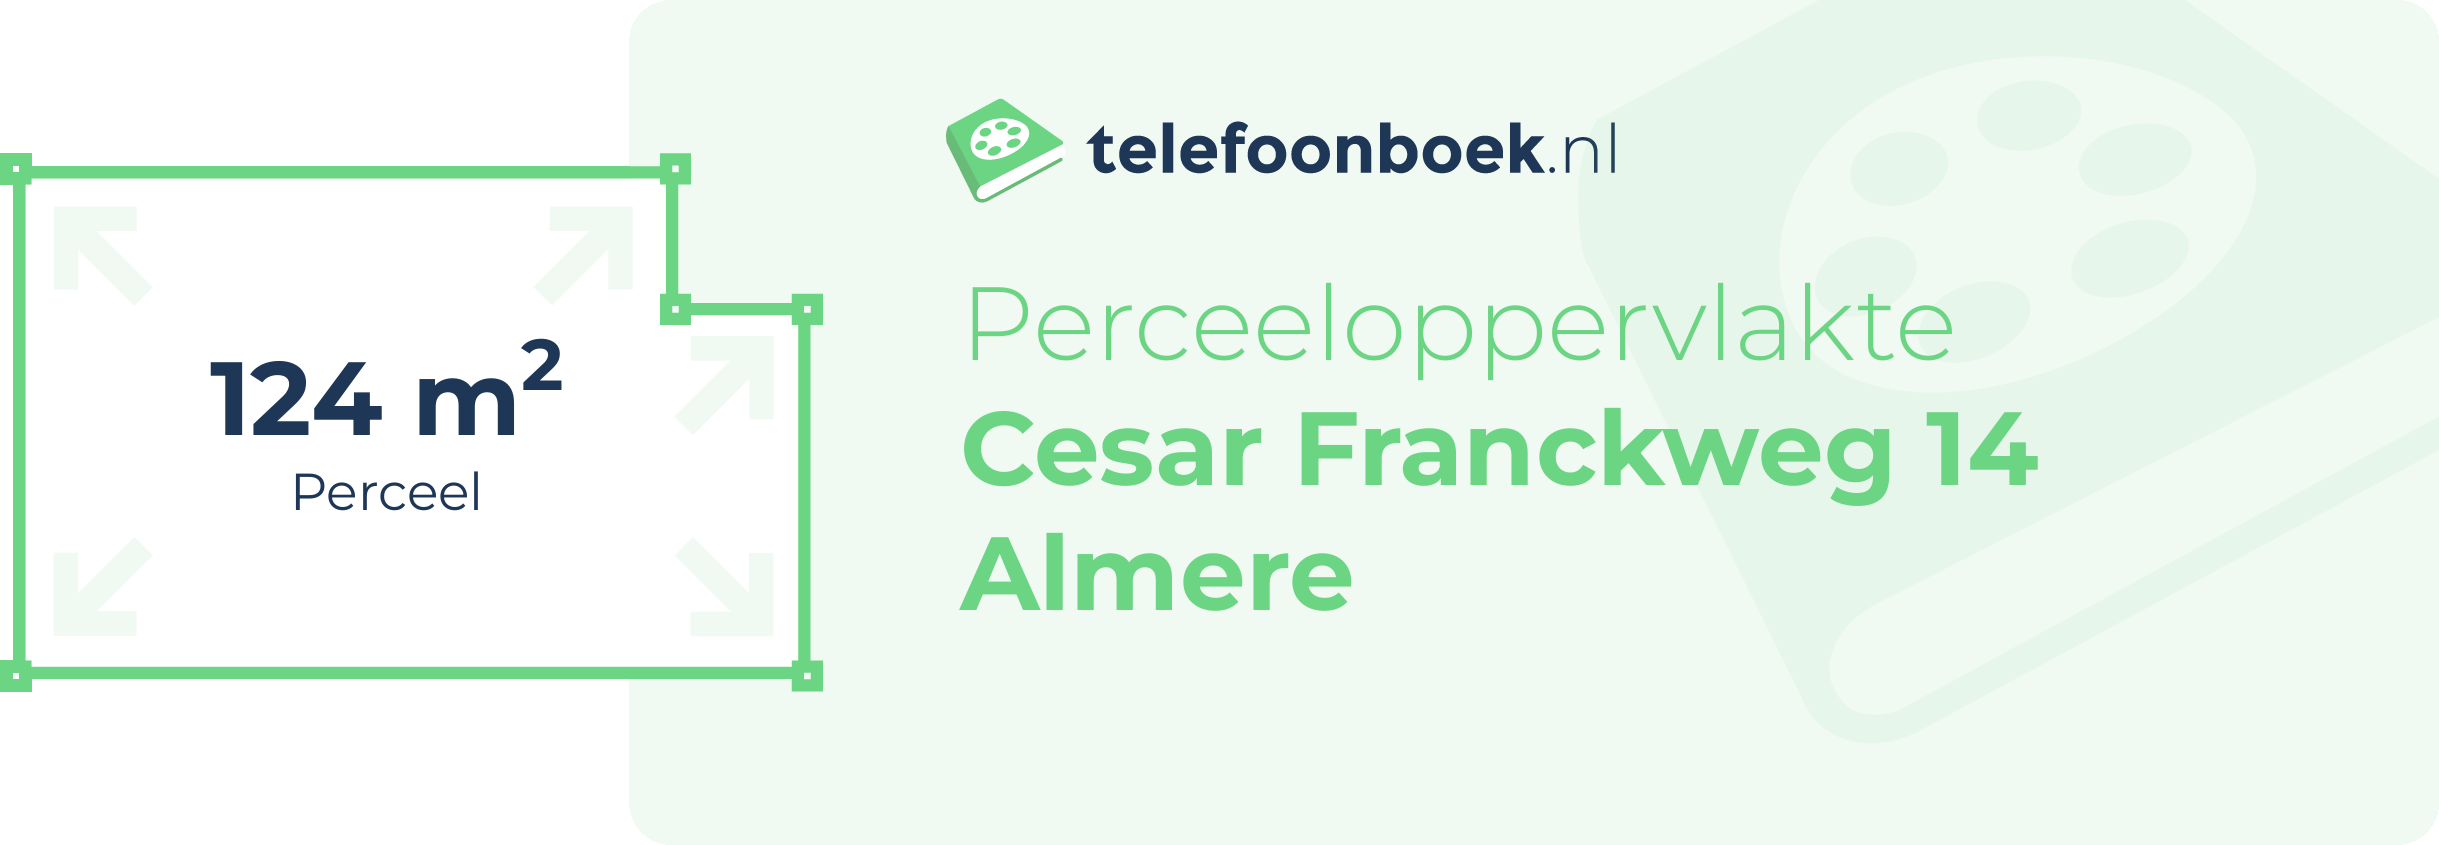 Perceeloppervlakte Cesar Franckweg 14 Almere